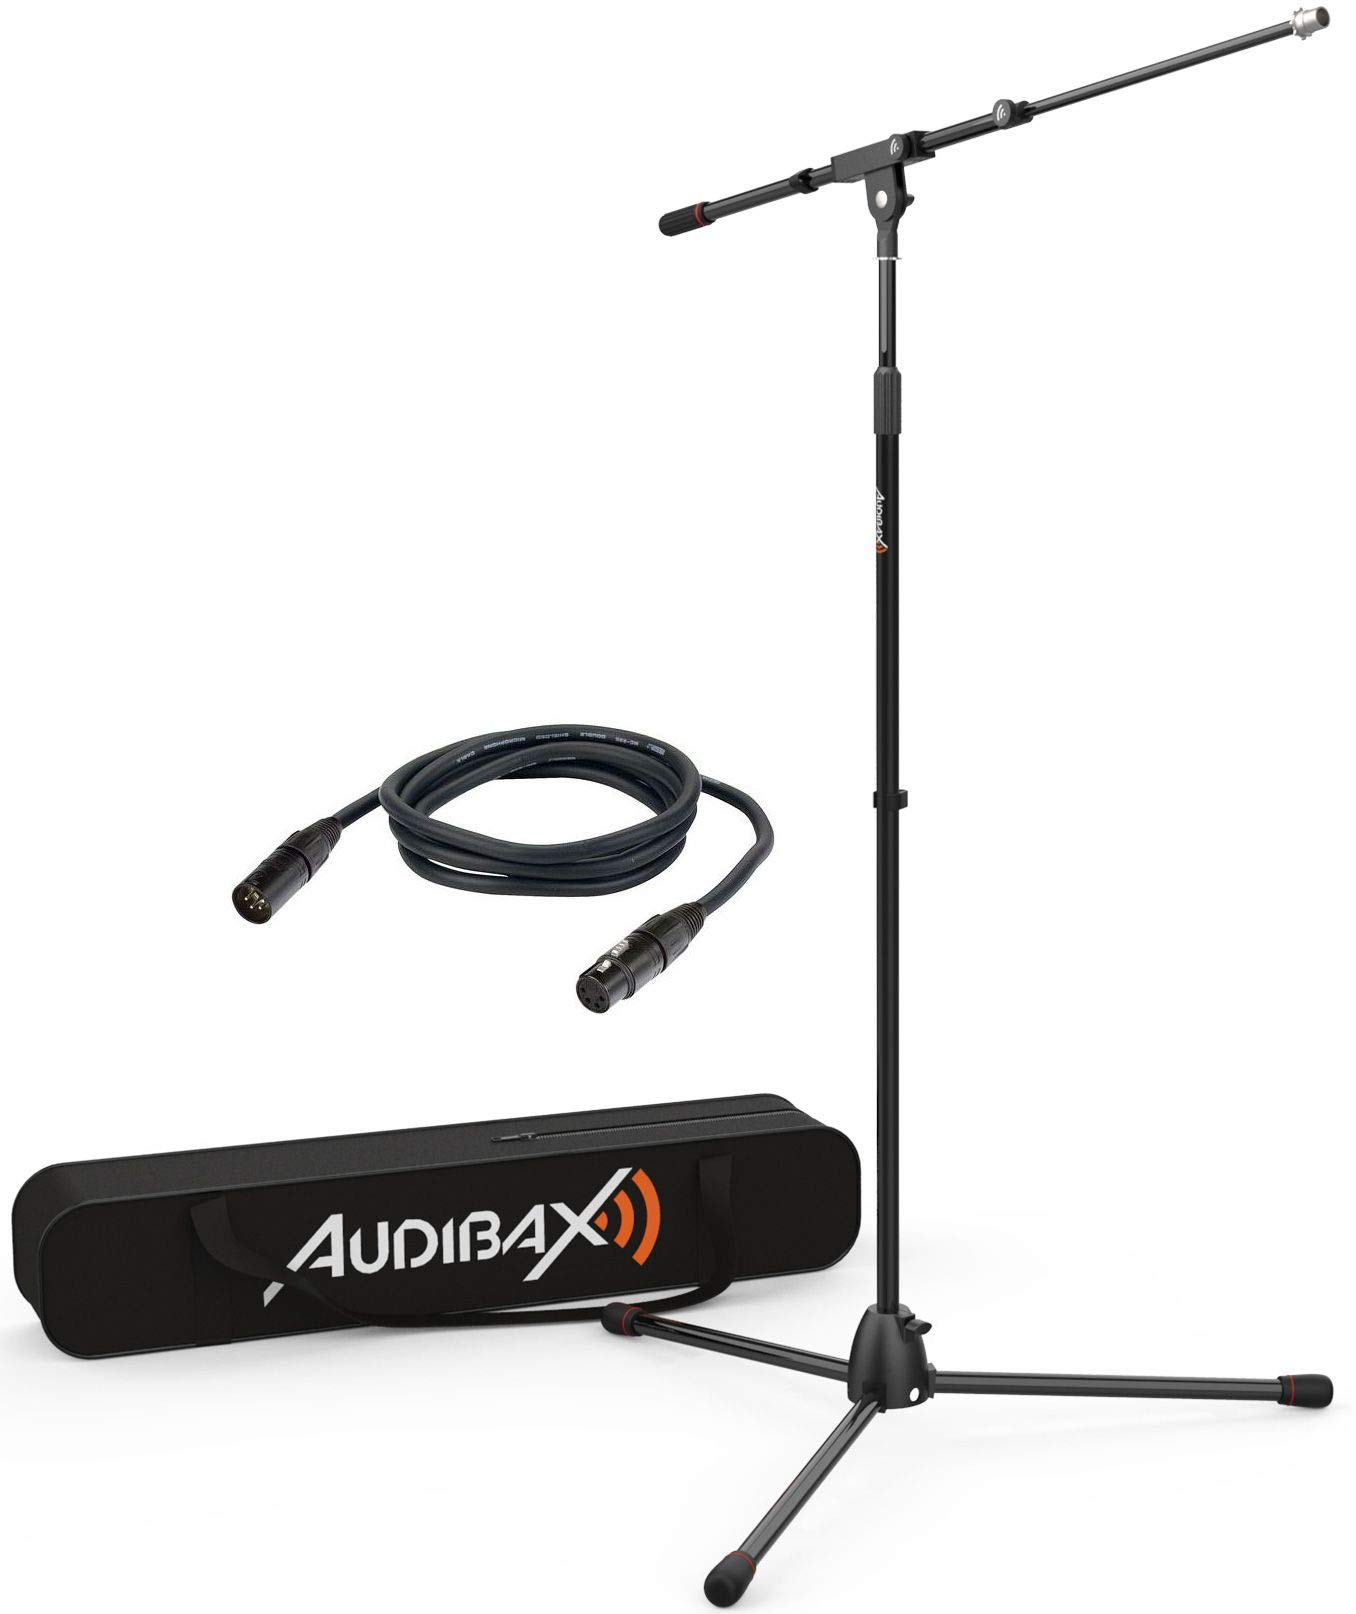 Audibax AYRA MS-10 Plus Soporte Jirafa Profesional para Micrófono con Bolsa y Cable 3 metros